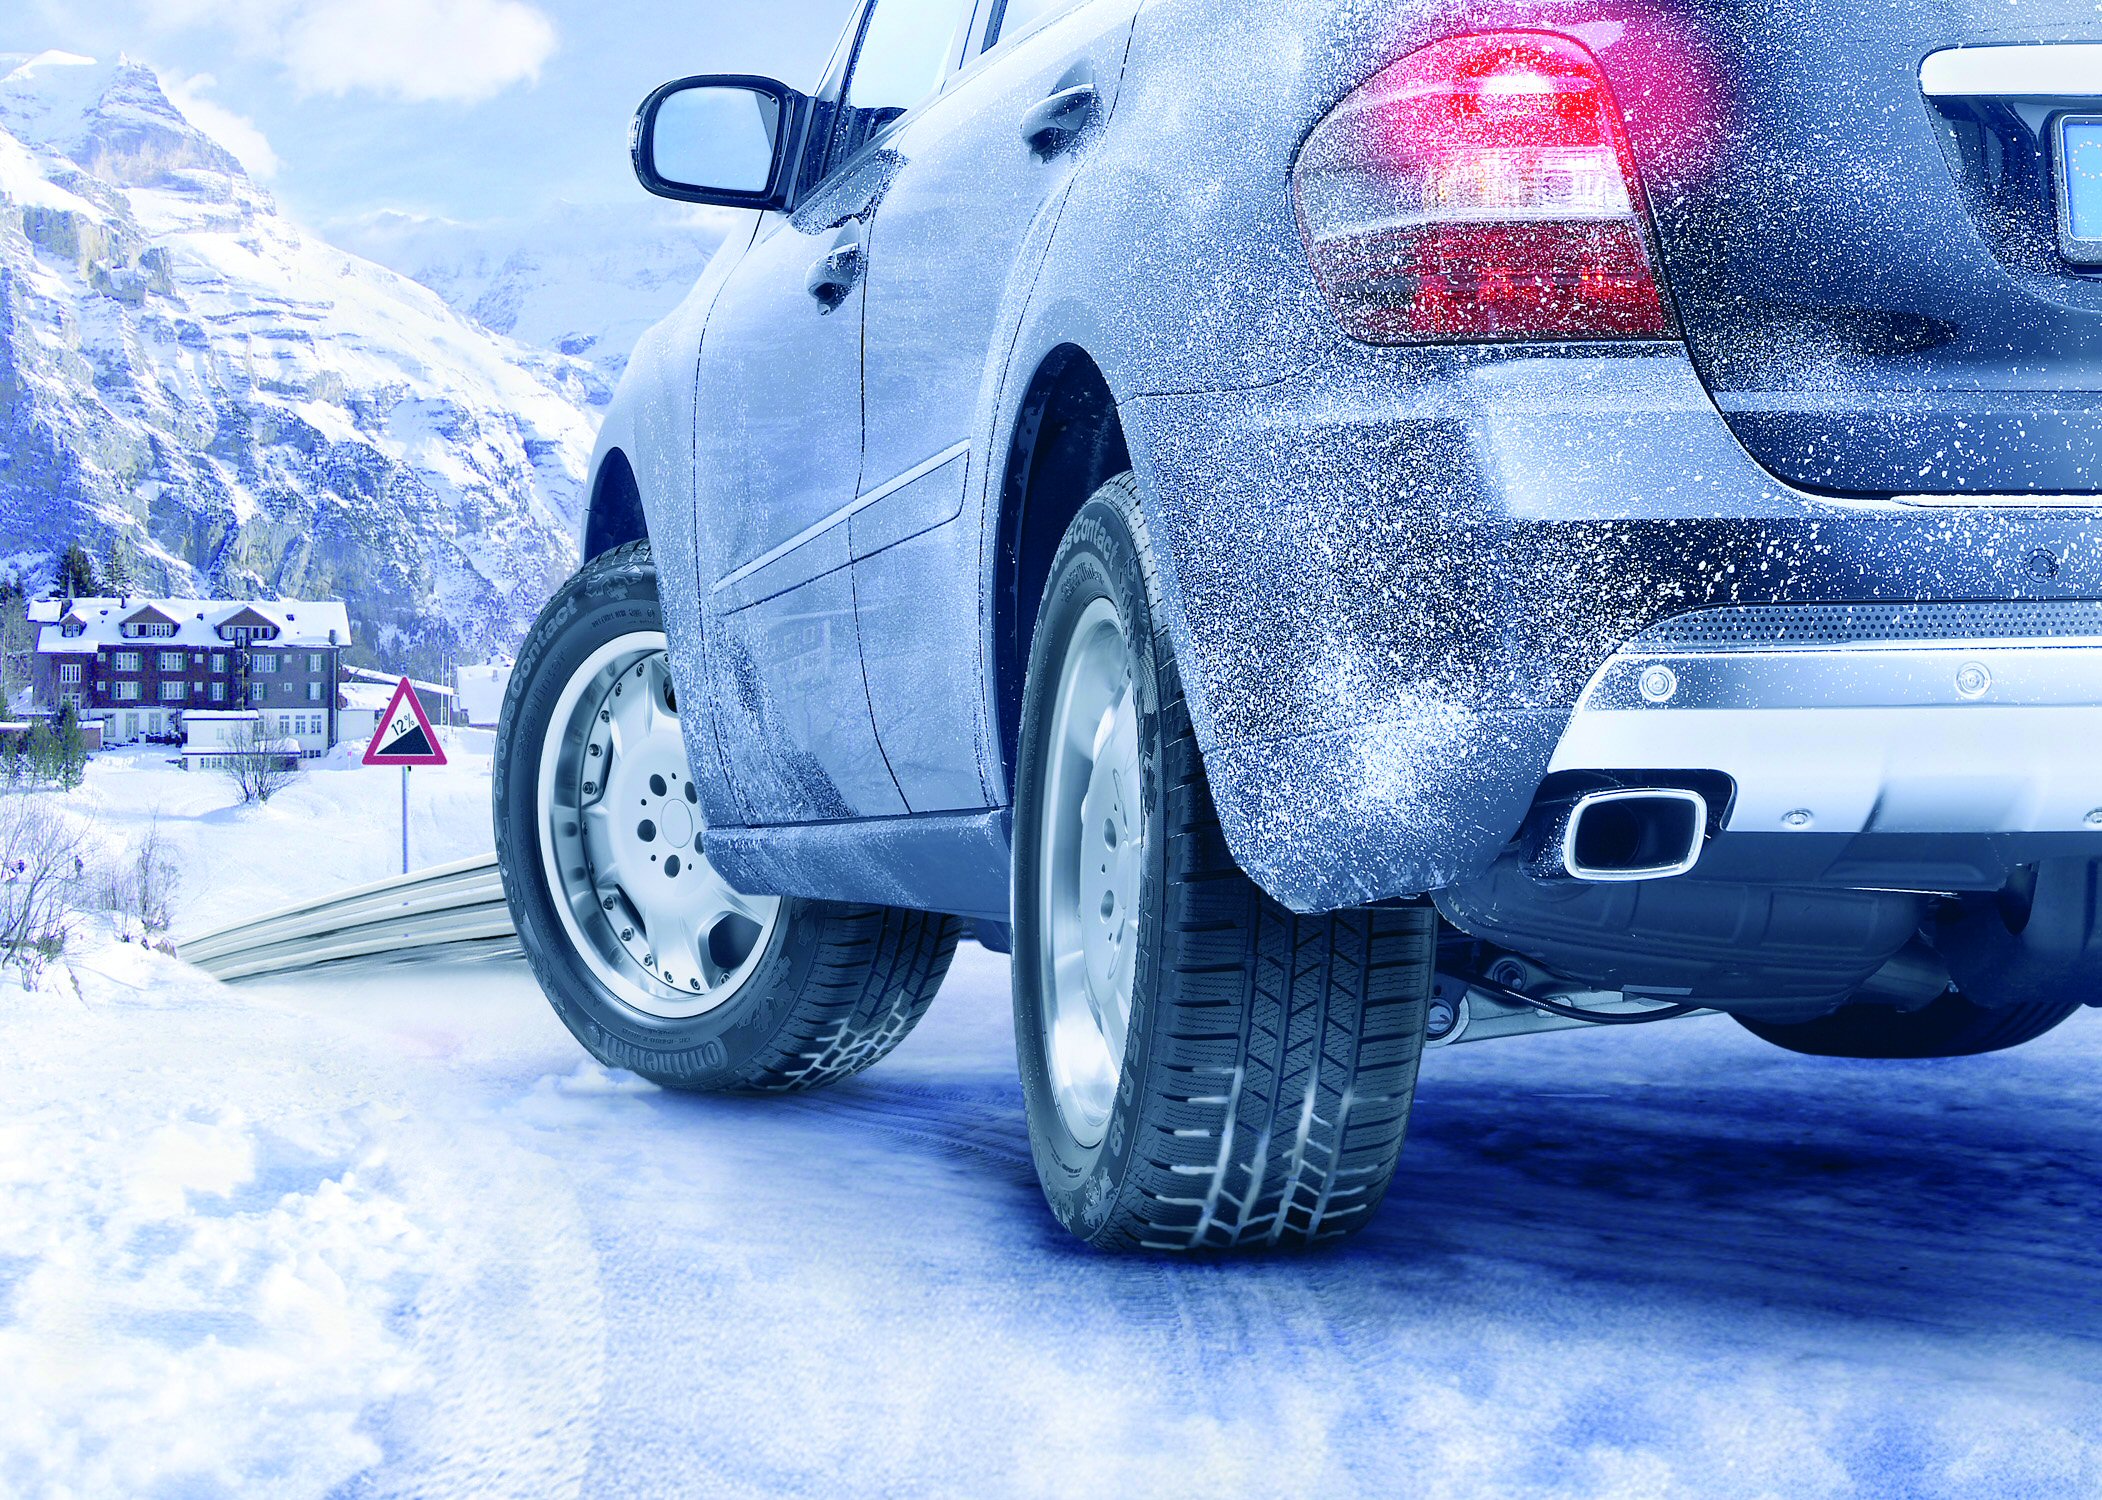 Следы эксплуатации автомобиля. Машина зимой. Машины на зимнем фоне. Машина в снегу. Подготовка автомобиля к зиме.